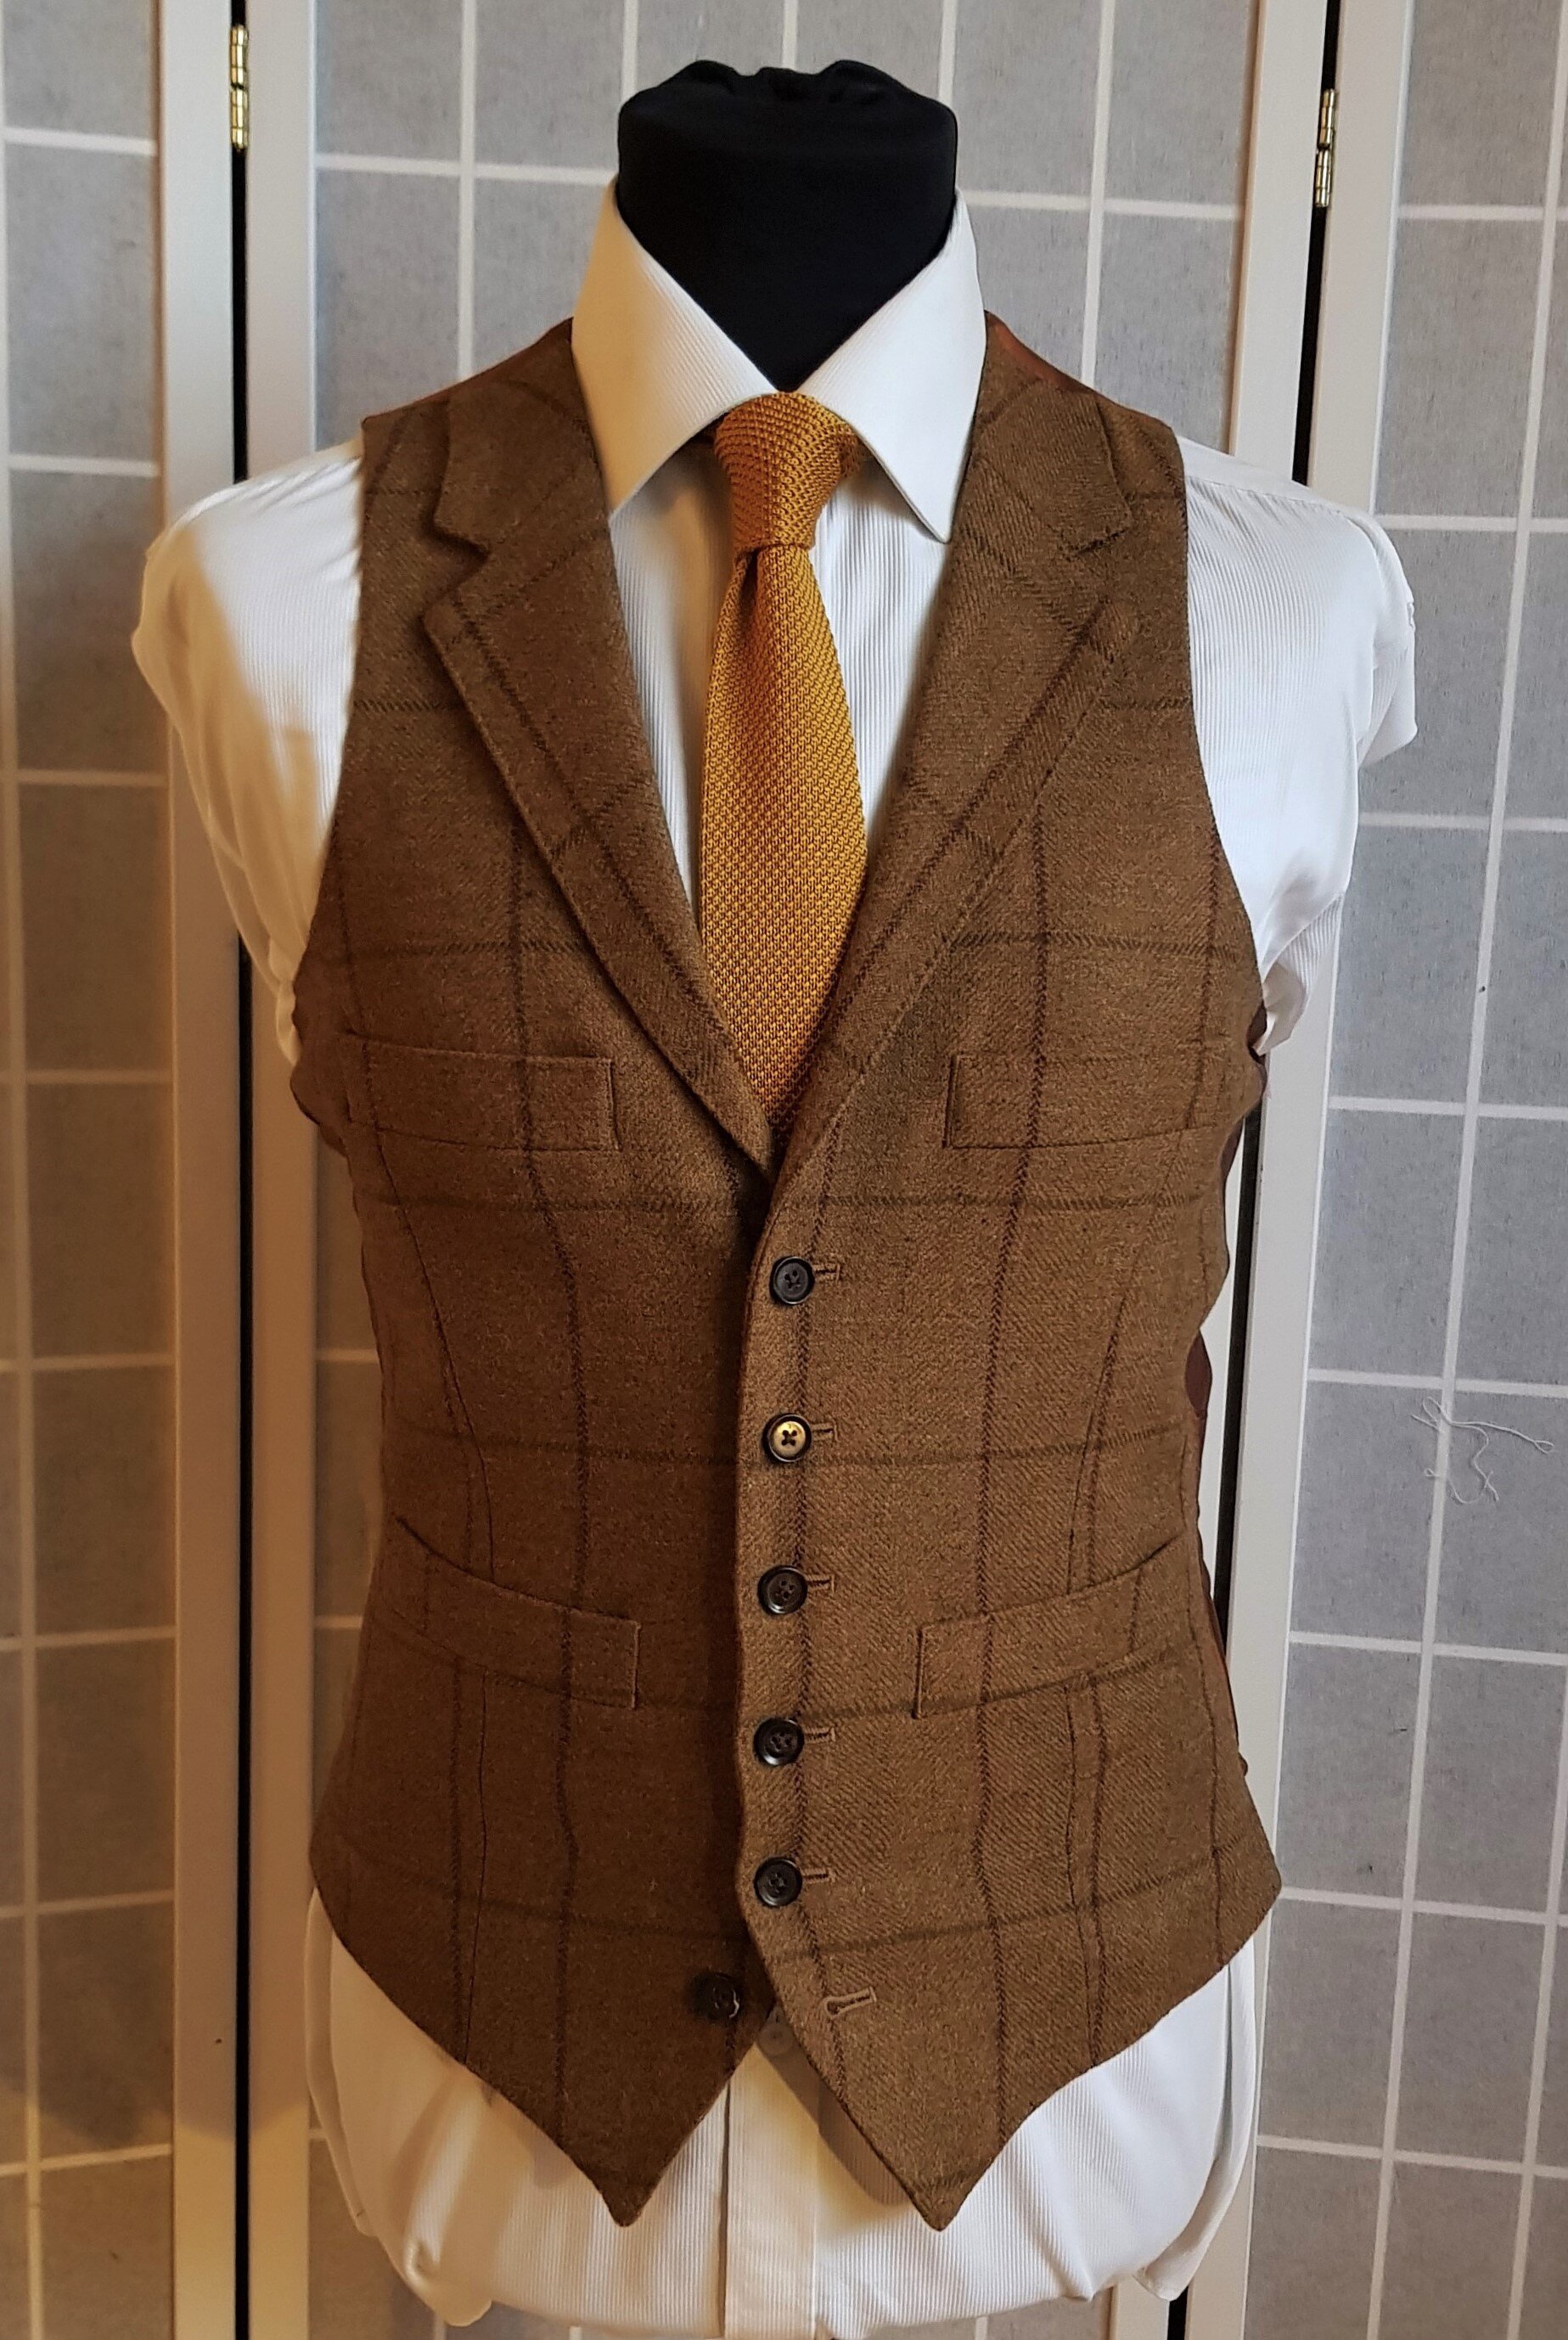 3 Piece Suit in Glenroyal Tweed (11).jpg